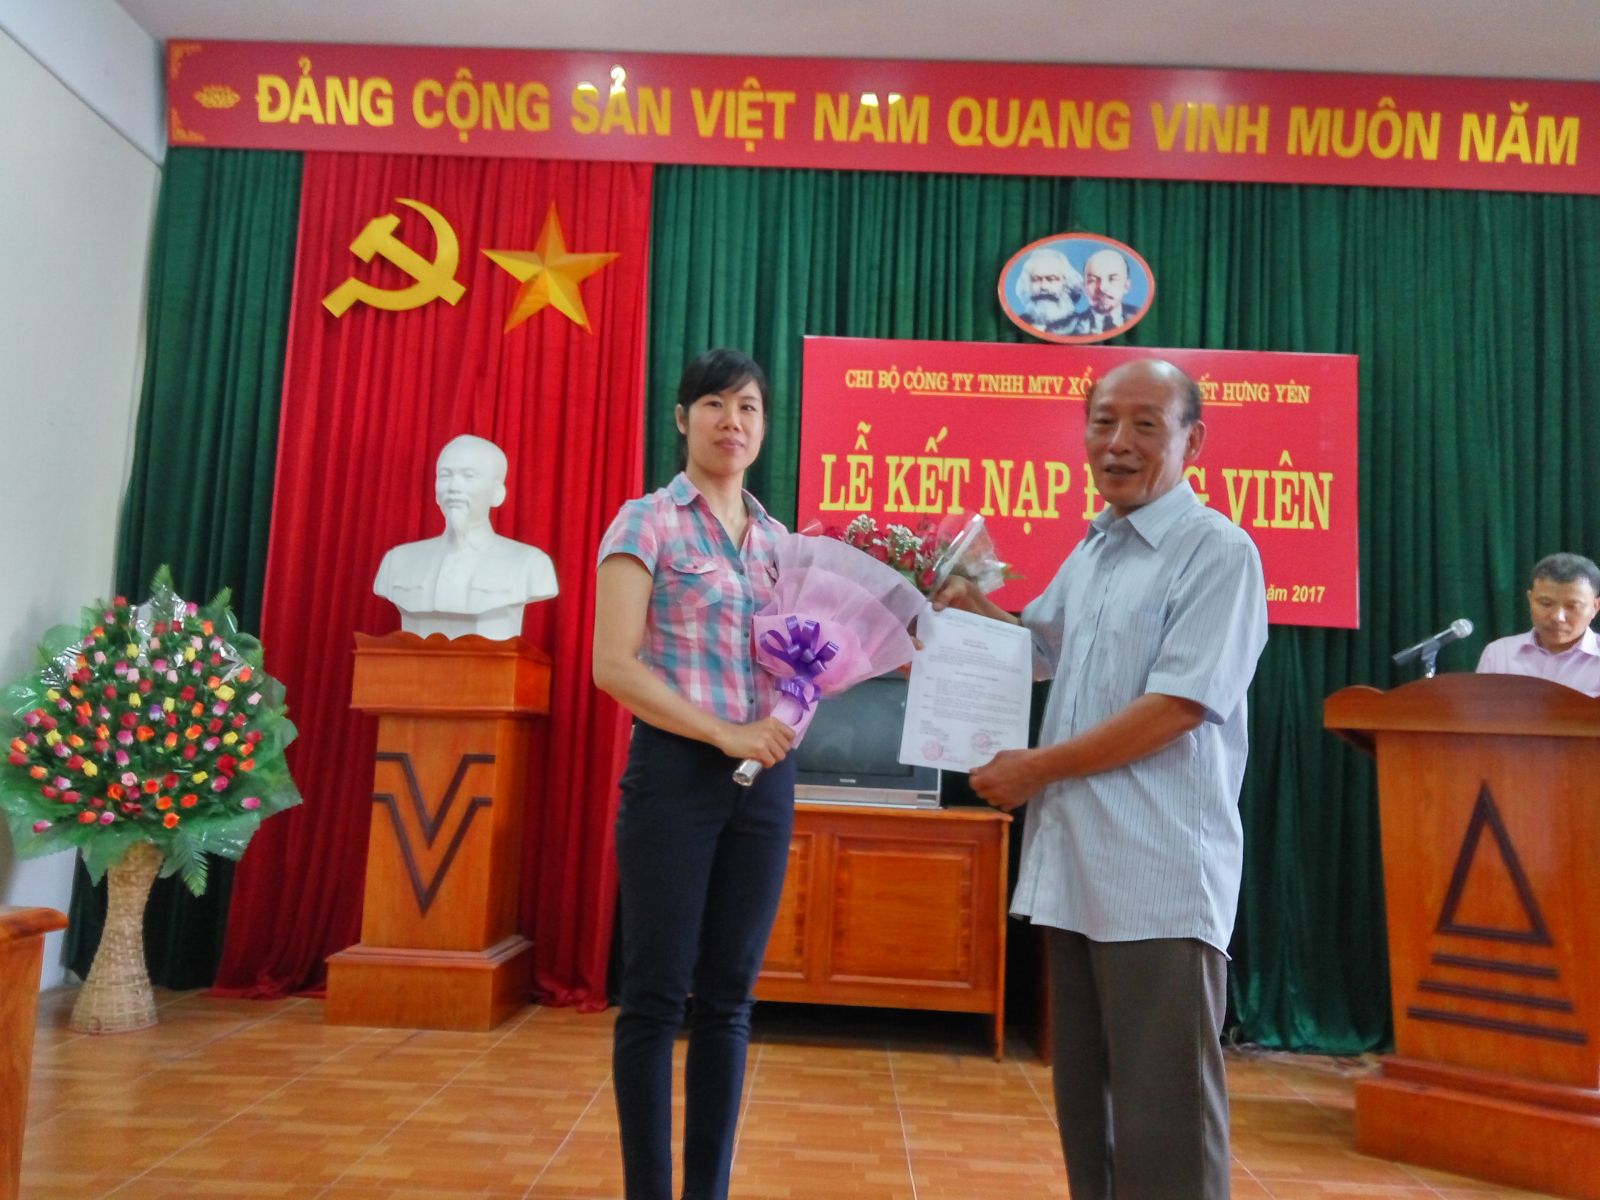 Đồng chí Nguyễn Đăng Lộc - Bí thi chi bộ đã trao quyết định kết nạp Đảng viên mới cho đồng chí Nguyễn Thị Thương